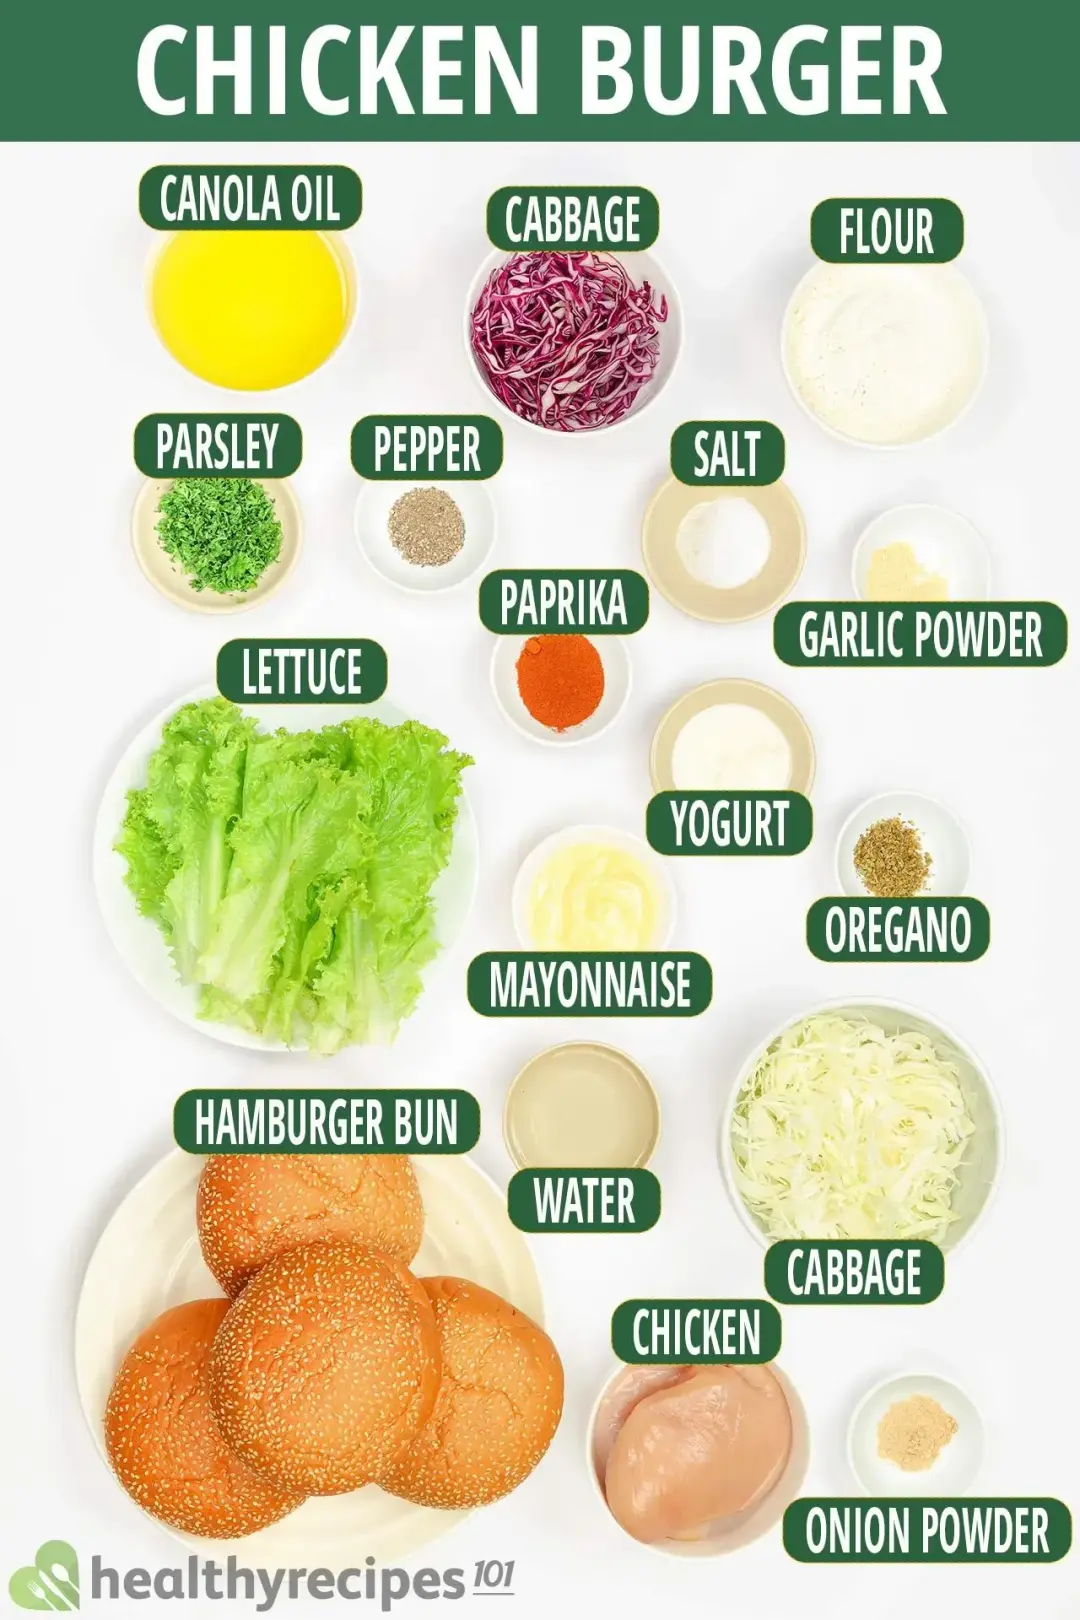 Ingredients for Chicken Burger